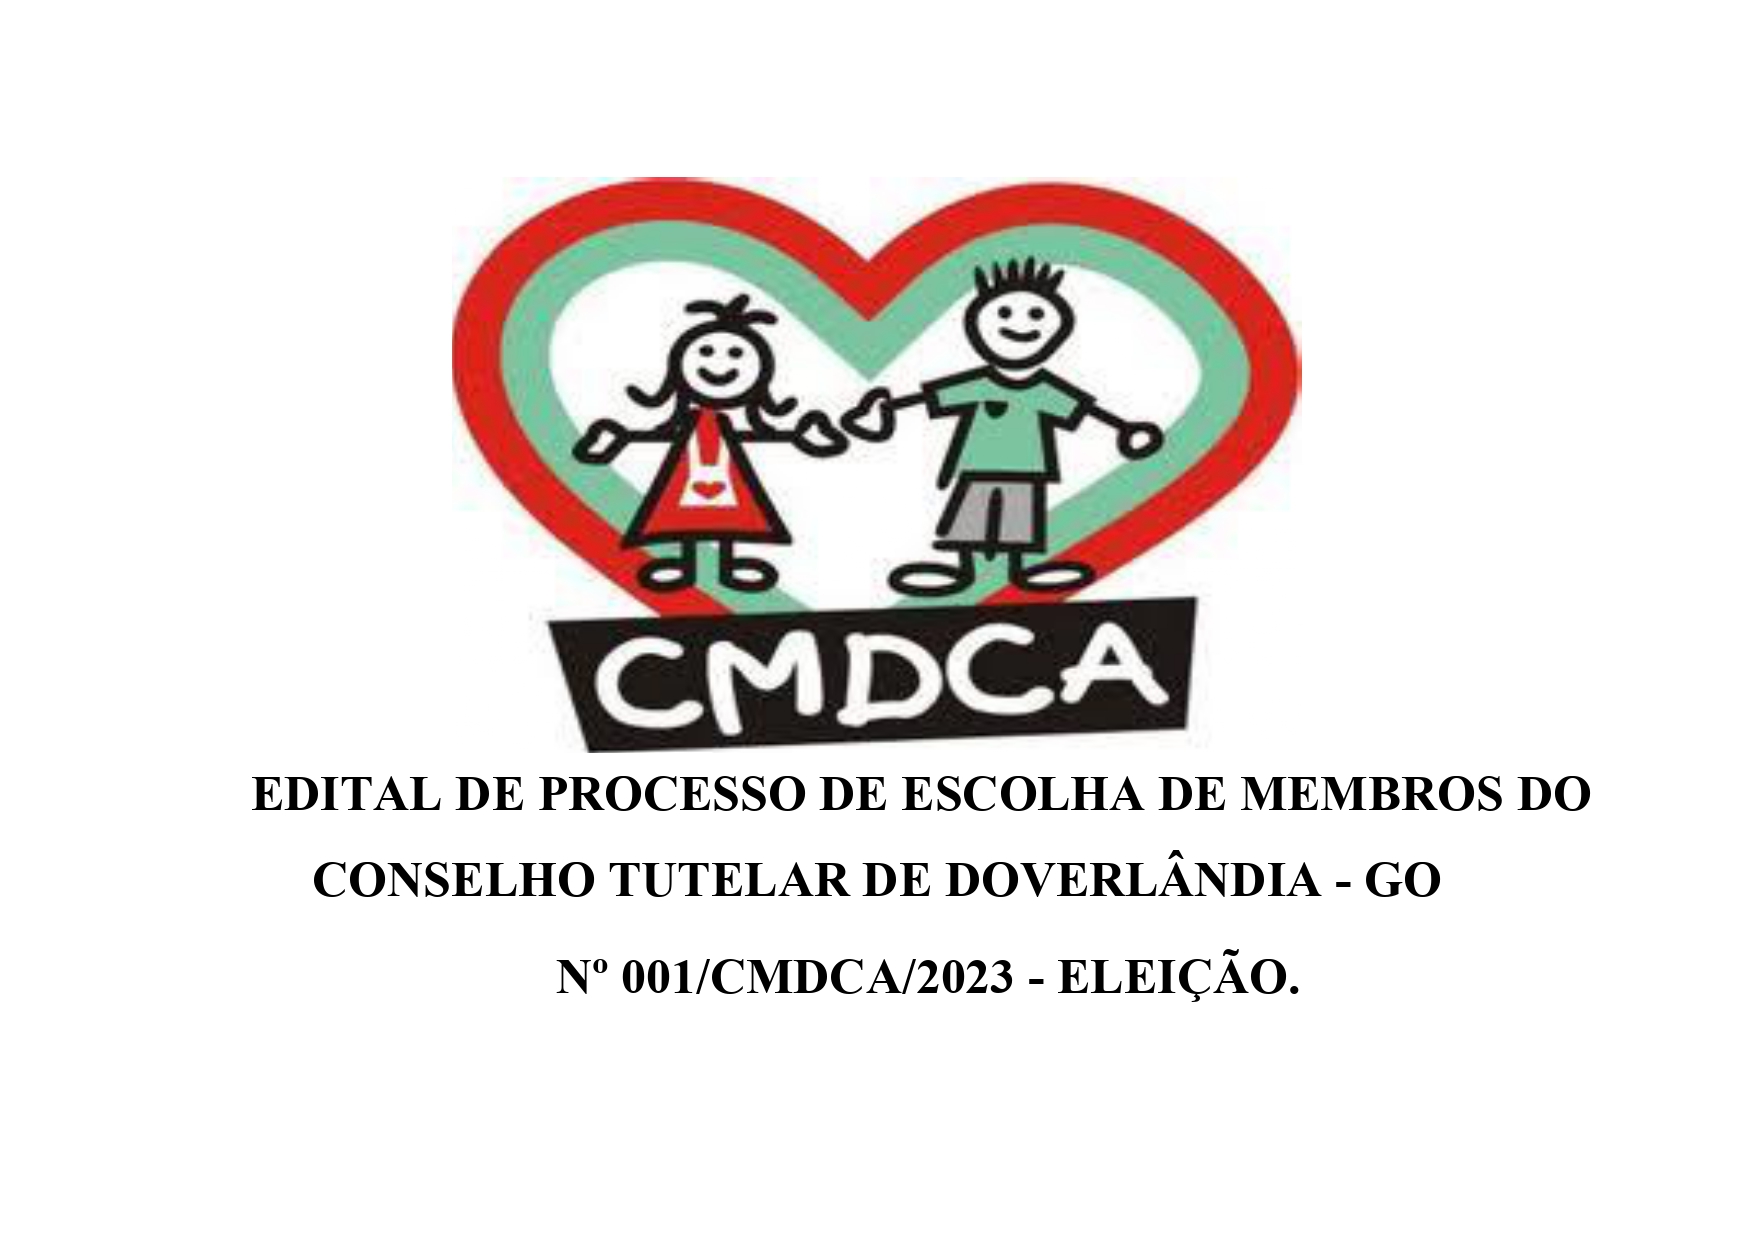 EDITAL DE PROCESSO DE ESCOLHA DE MEMBROS DO CONSELHO TUTELAR DE DOVERLÂNDIA – GO, Nº 001/CMDCA/2023 – ELEIÇÃO.